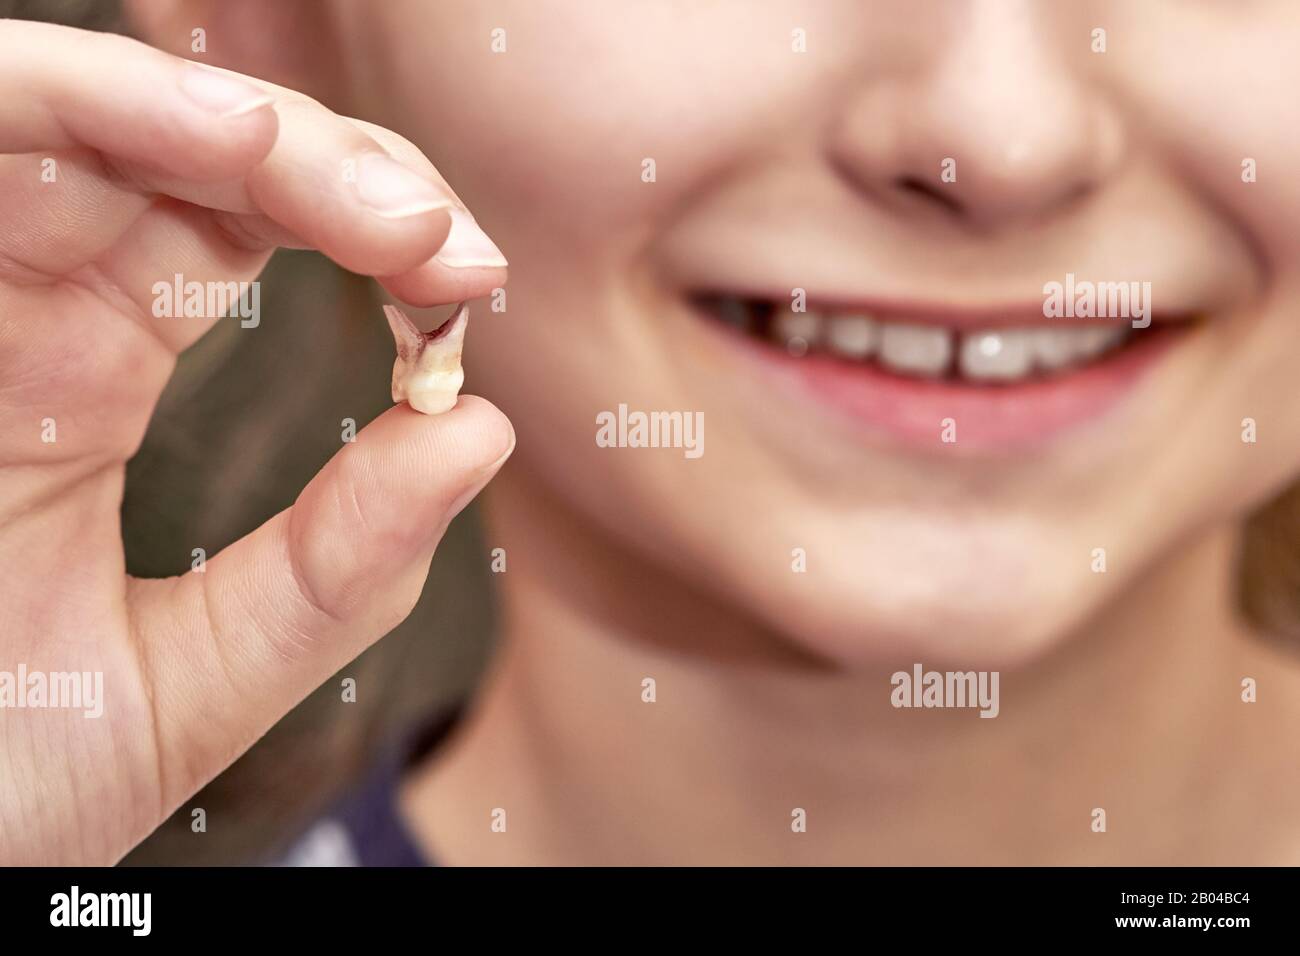 Une petite fille tient une dent tombée dans sa main et sourit. Gros plan, mise au point sélective Banque D'Images